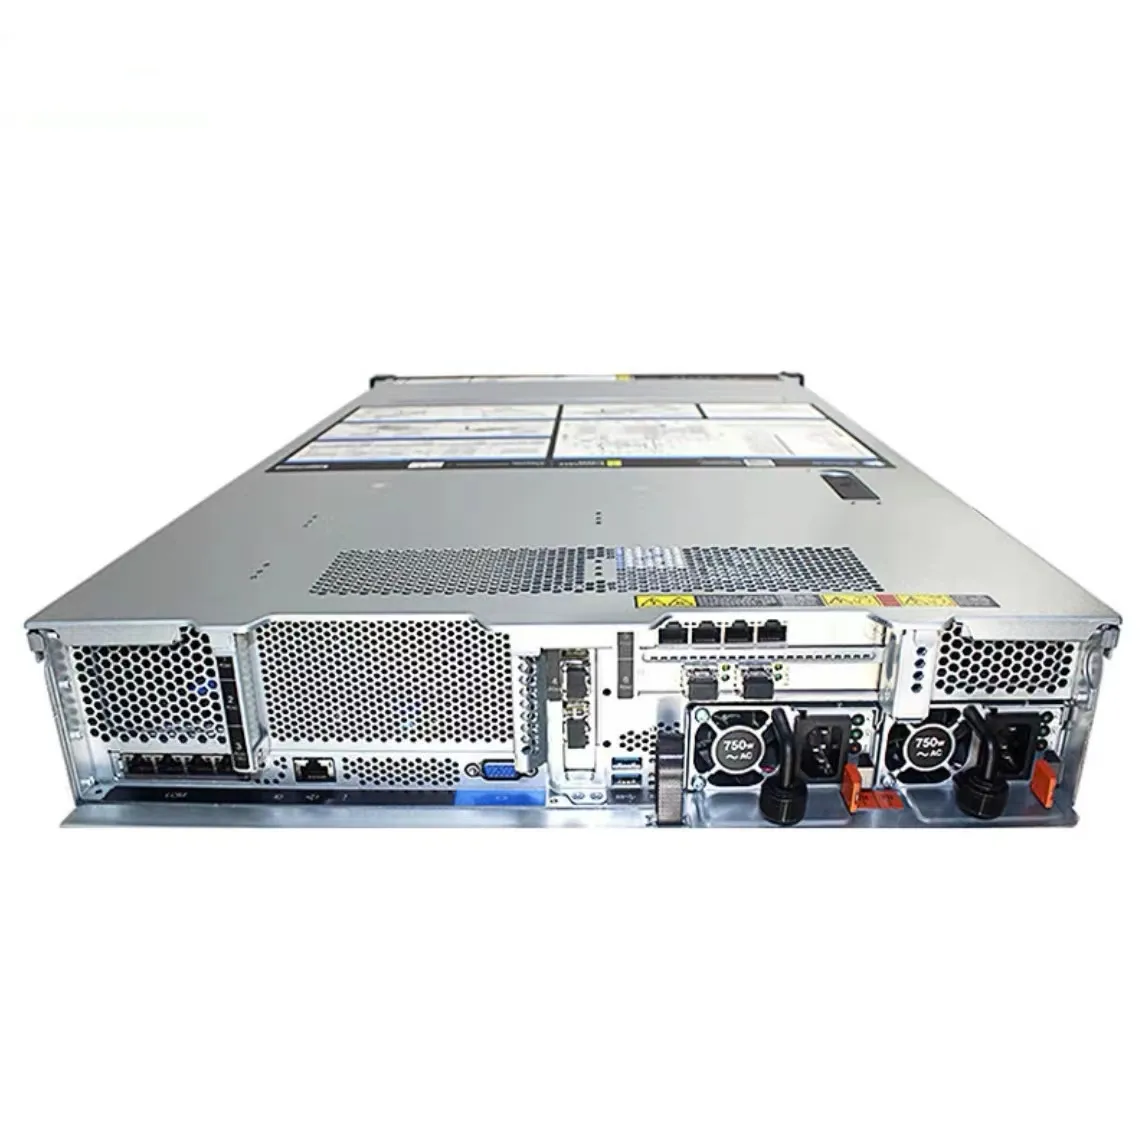 Sr650 gpu servidor computador preço comprar caso 32 core Rack 2u SR650 Lenovo Thinksystem Servidor